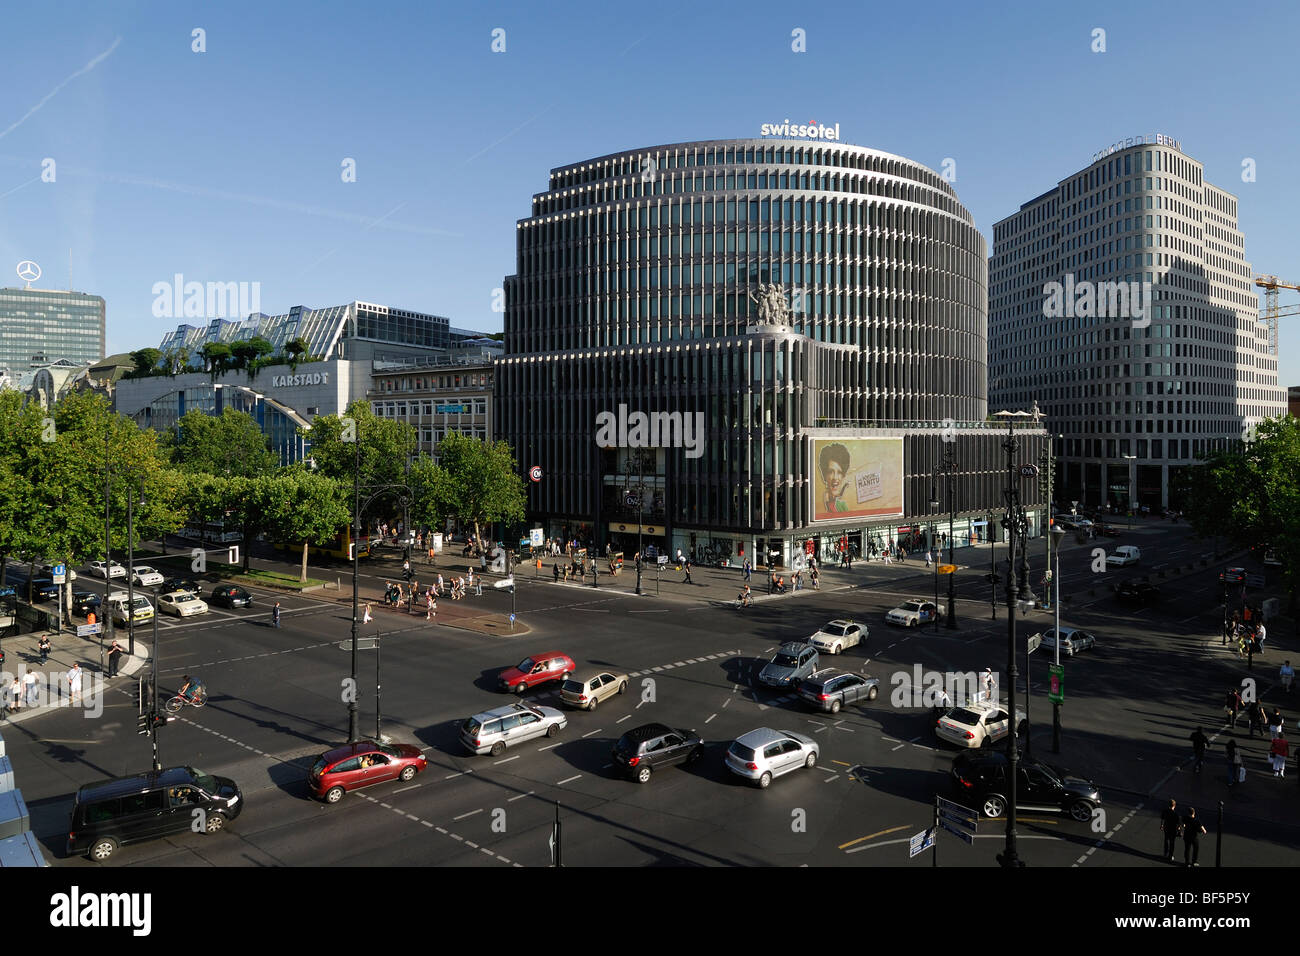 Berlin. L'Allemagne. Vue sur le Kurfürstendamm à l'intersection avec la rue Joachimstaler Strasse et le Swissotel bâtiment. Banque D'Images